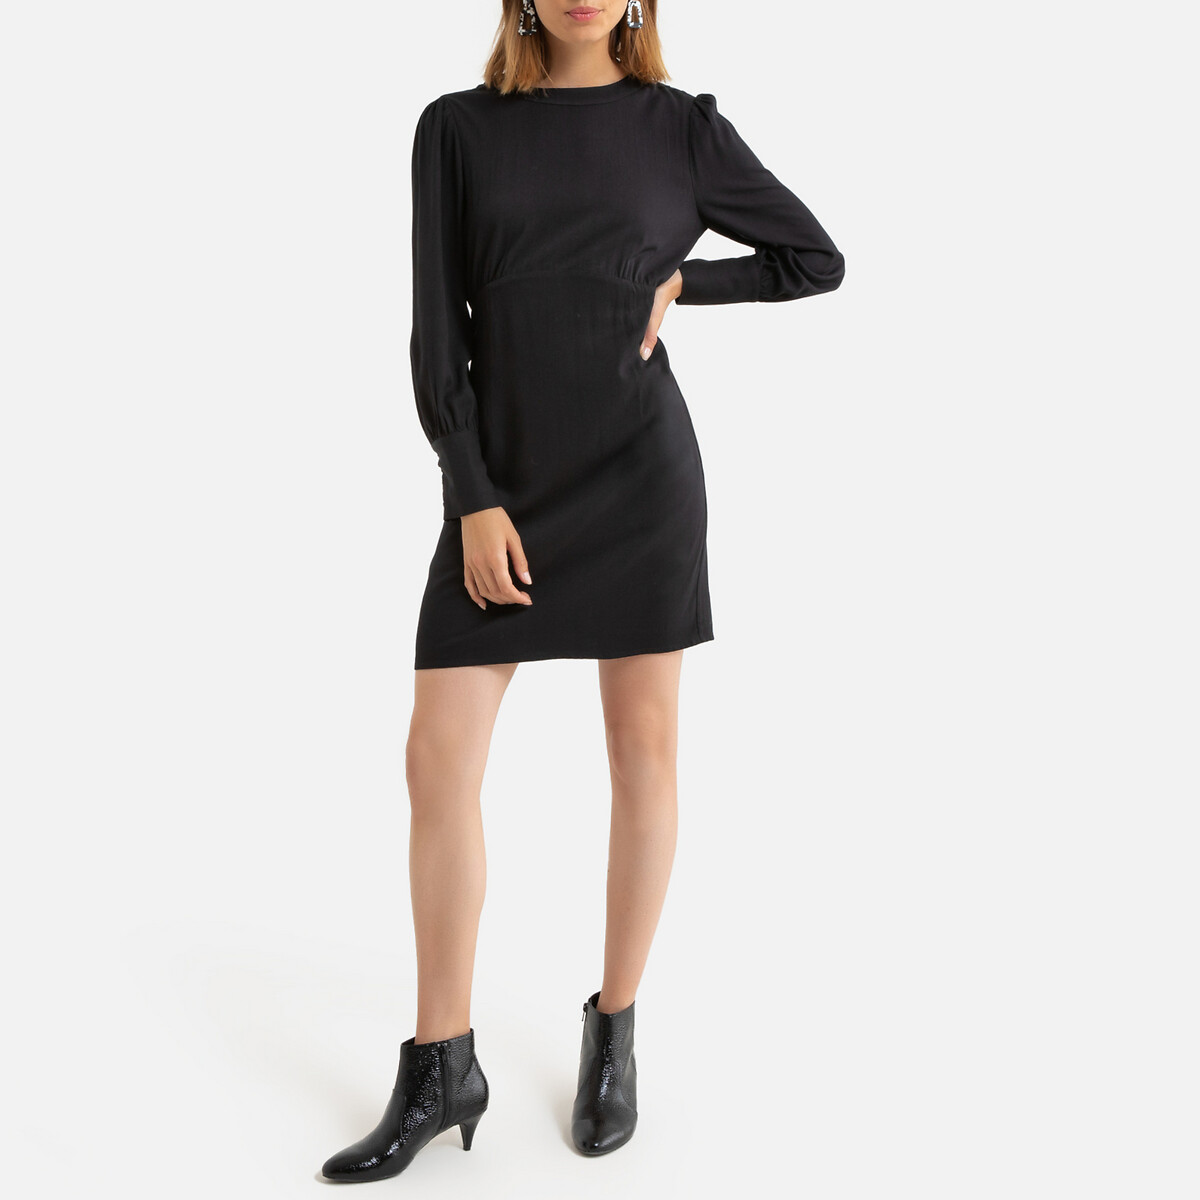 Платье La Redoute Короткое длинные рукава декольте сзади 0(XS) черный, размер 0(XS) Короткое длинные рукава декольте сзади 0(XS) черный - фото 2